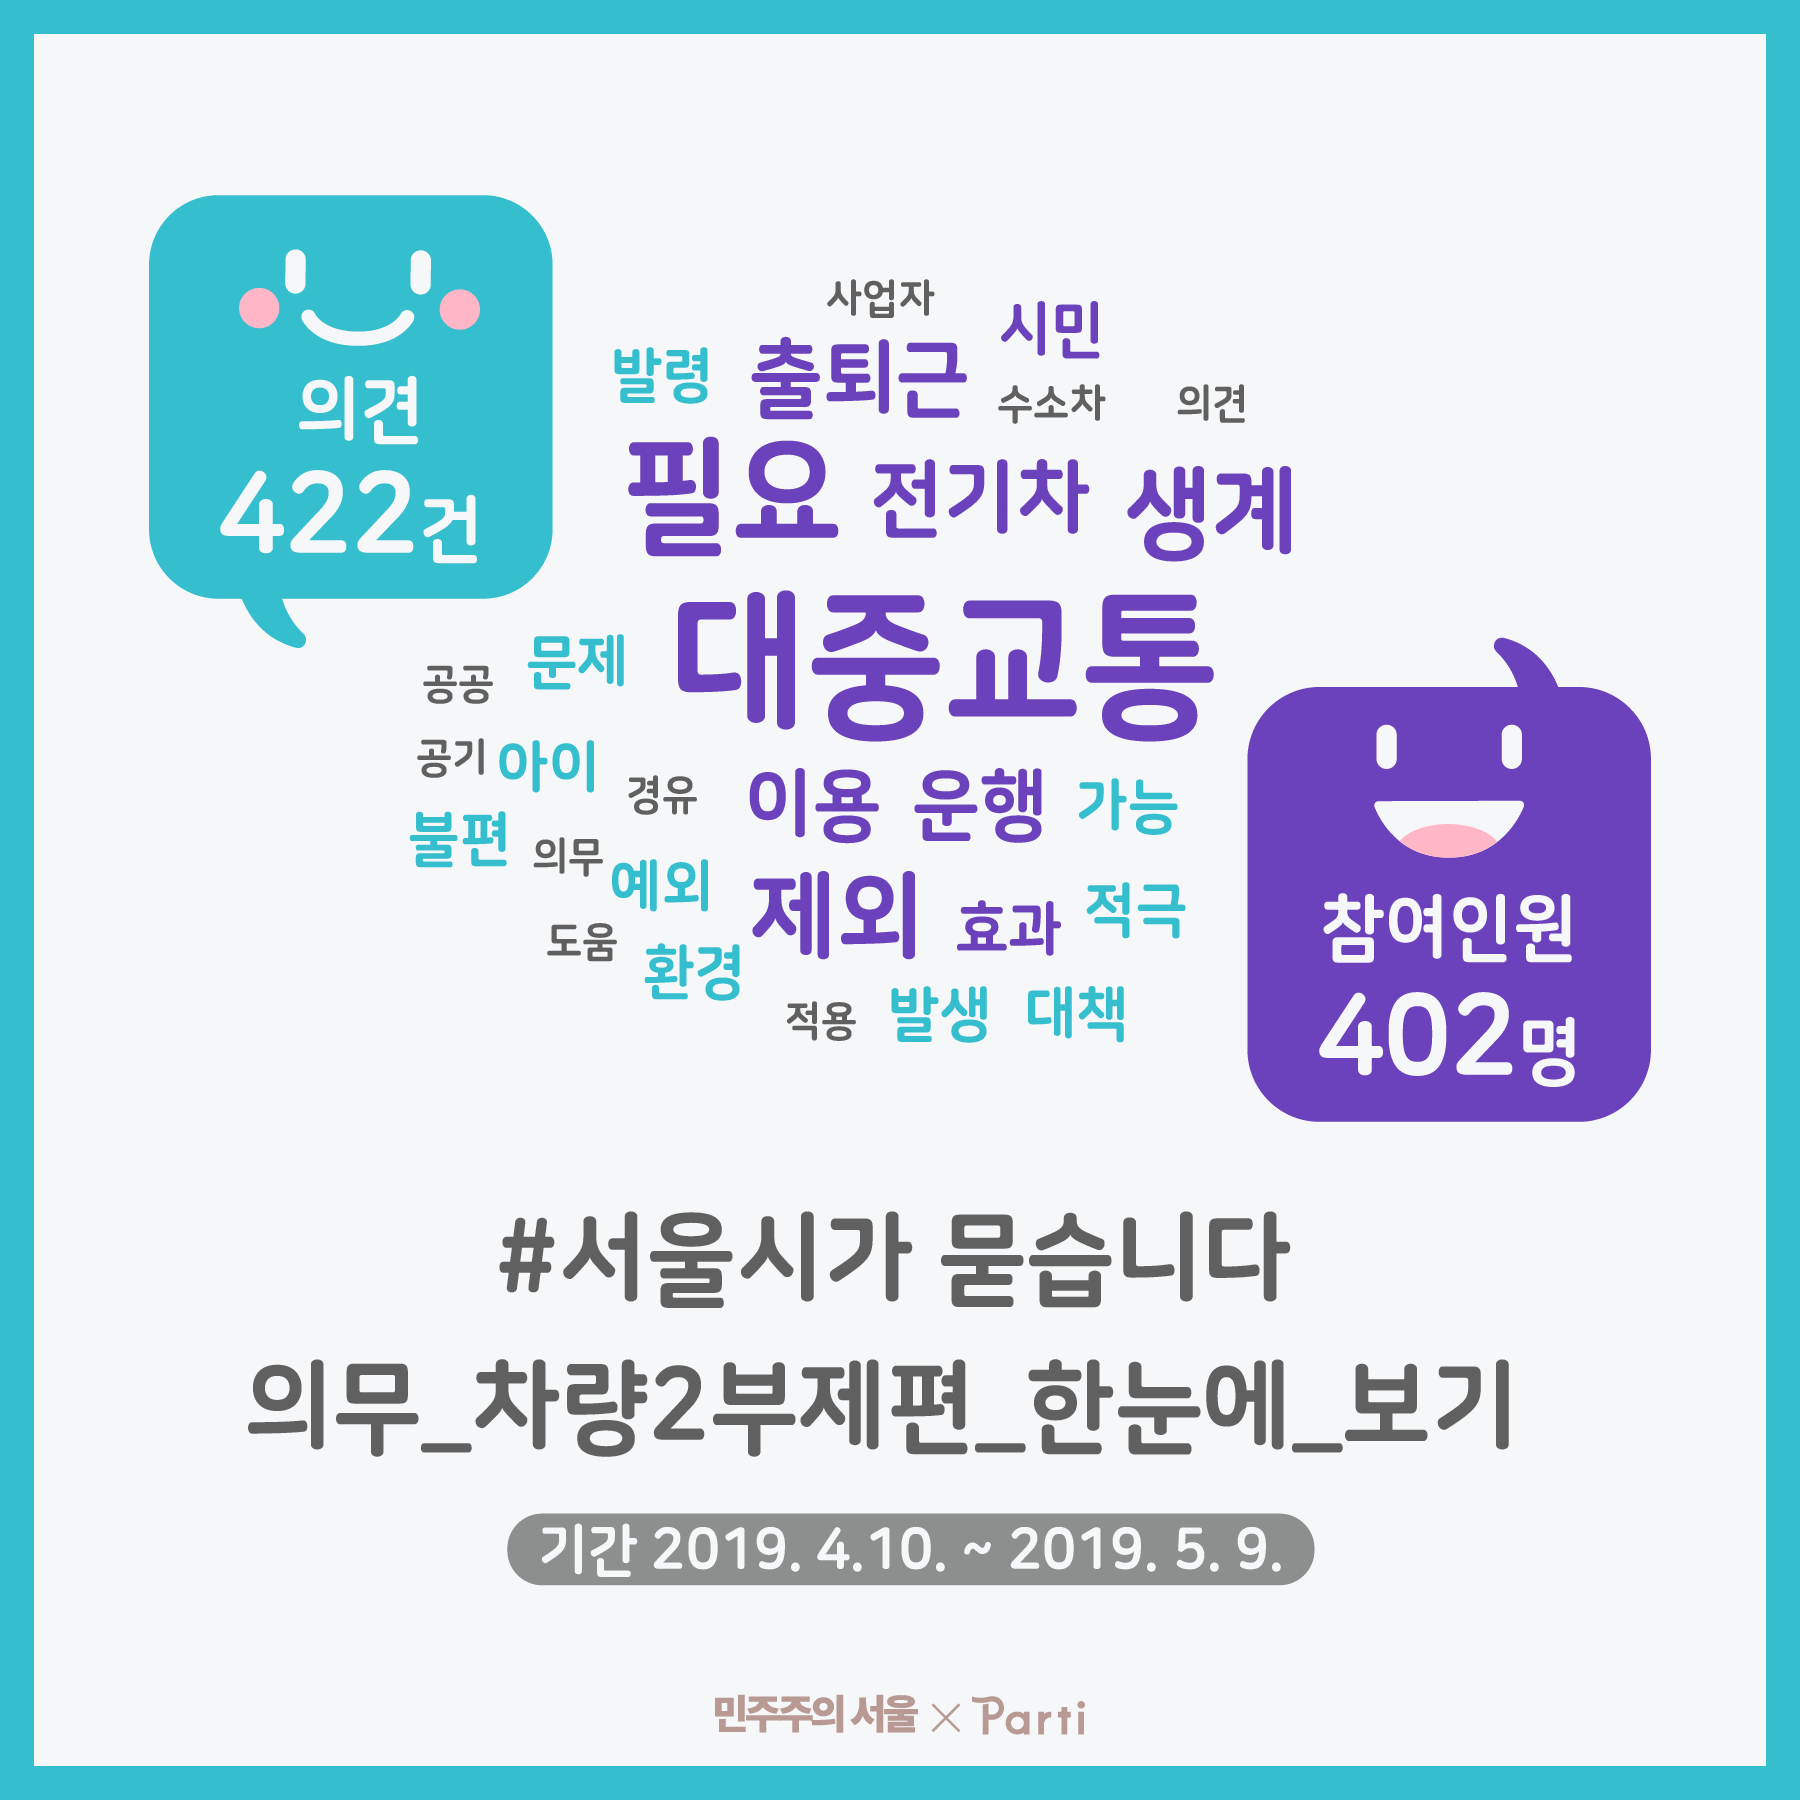 9,049건의 조회와 422건의 의견,  402명이 참여해주셨습니다. 서울시가 묻습니다 의무 차량 부제편 한눈에 보기 기간 2019년 4월 10일부터 2019년 5월 9일까지